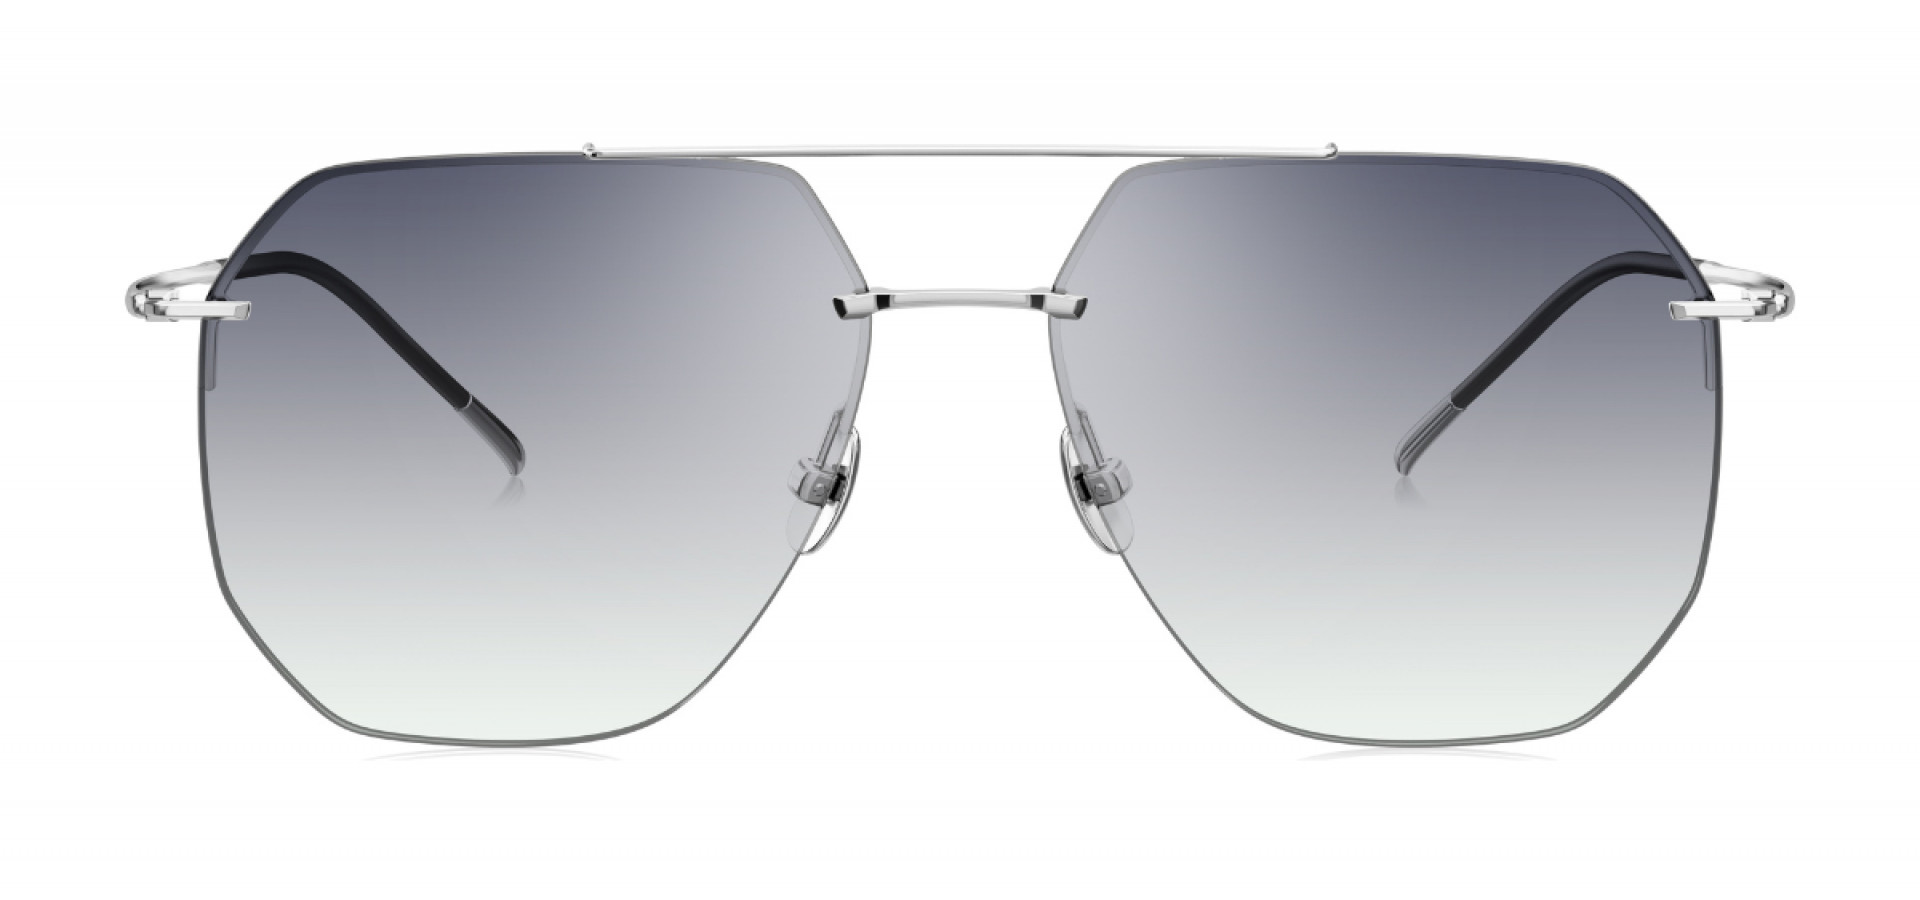 Sunčane naočale Bolon BV1025 59 B97: Boja: Silver, Veličina: 59-15-148, Spol: muške, Materijal: titanij